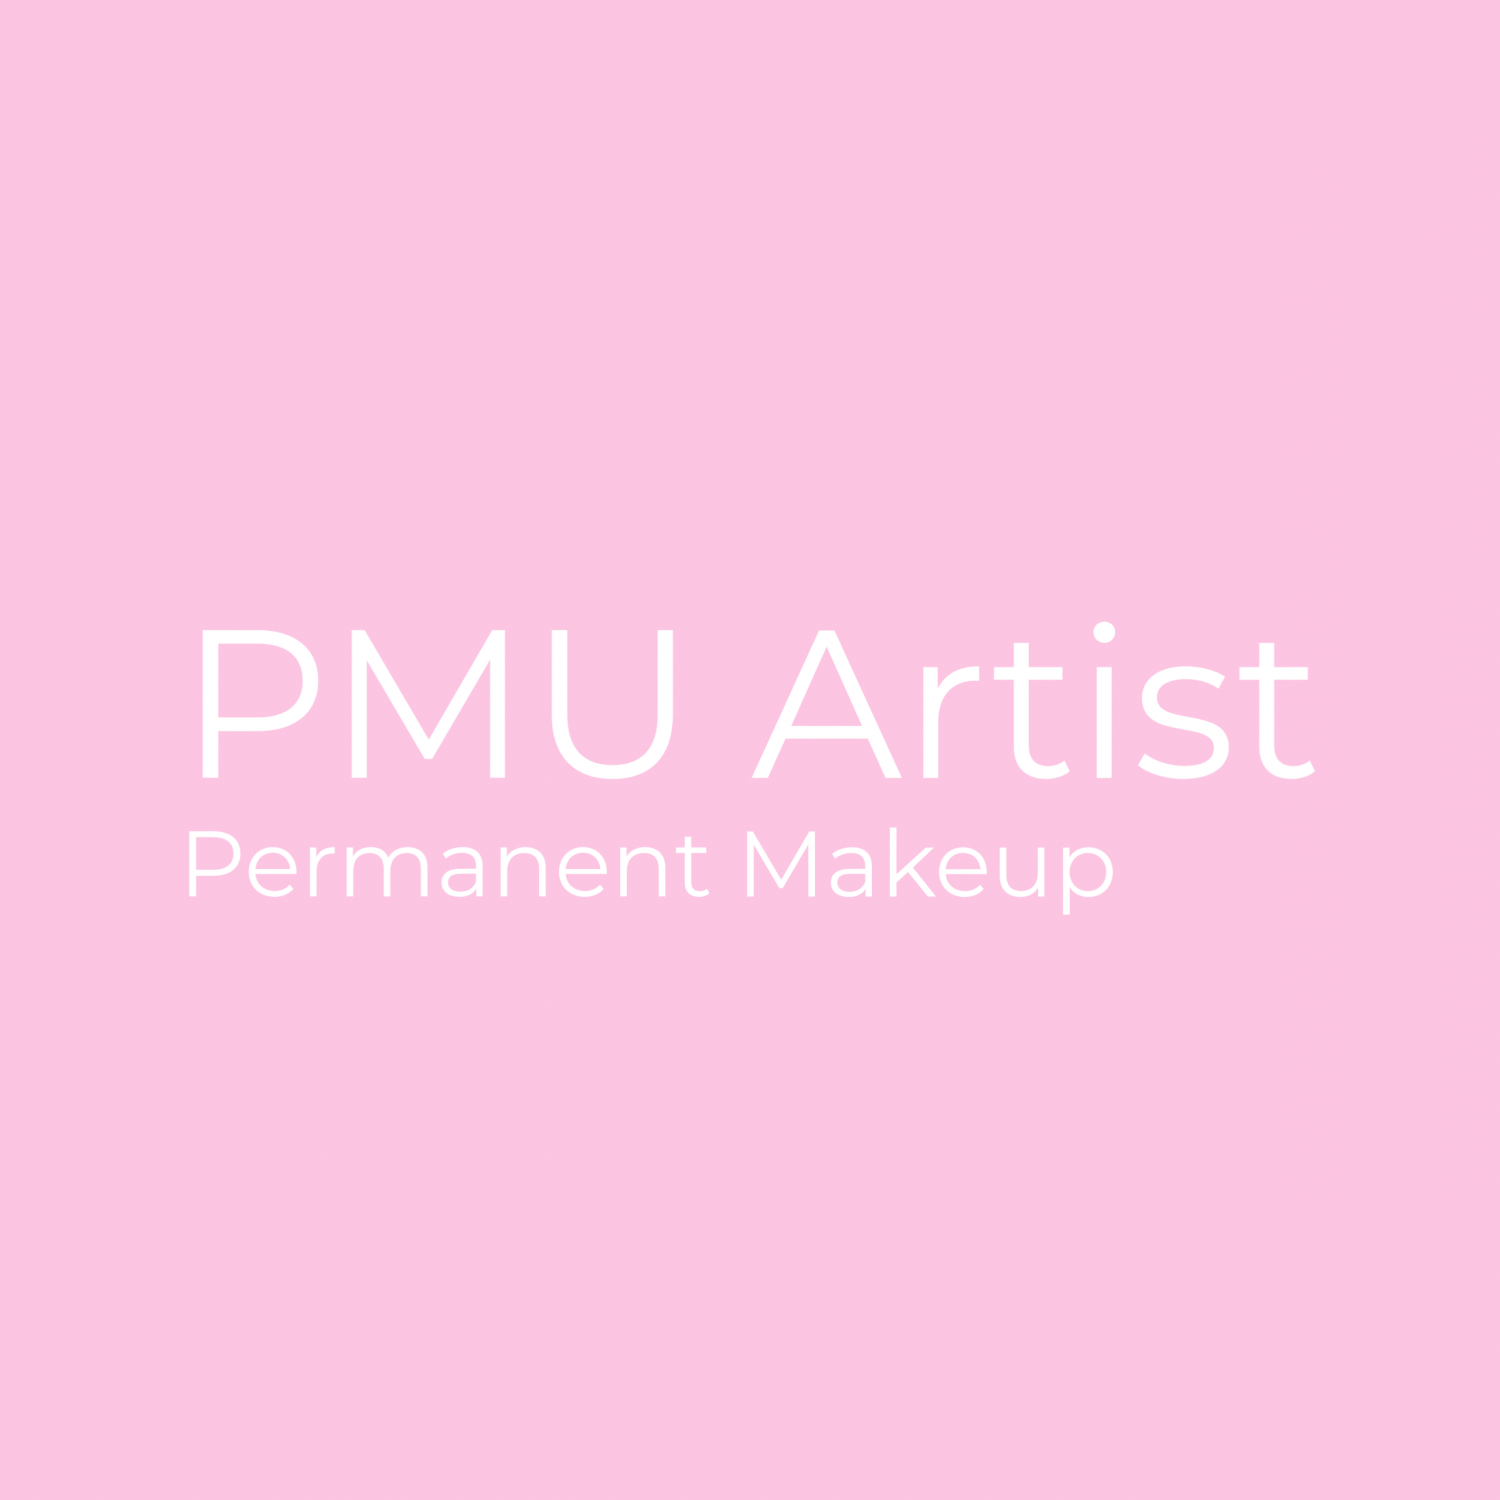 protektor Planlagt analysere Permanent Makeup - Smuk med den bedste Permanent makeup hver dag